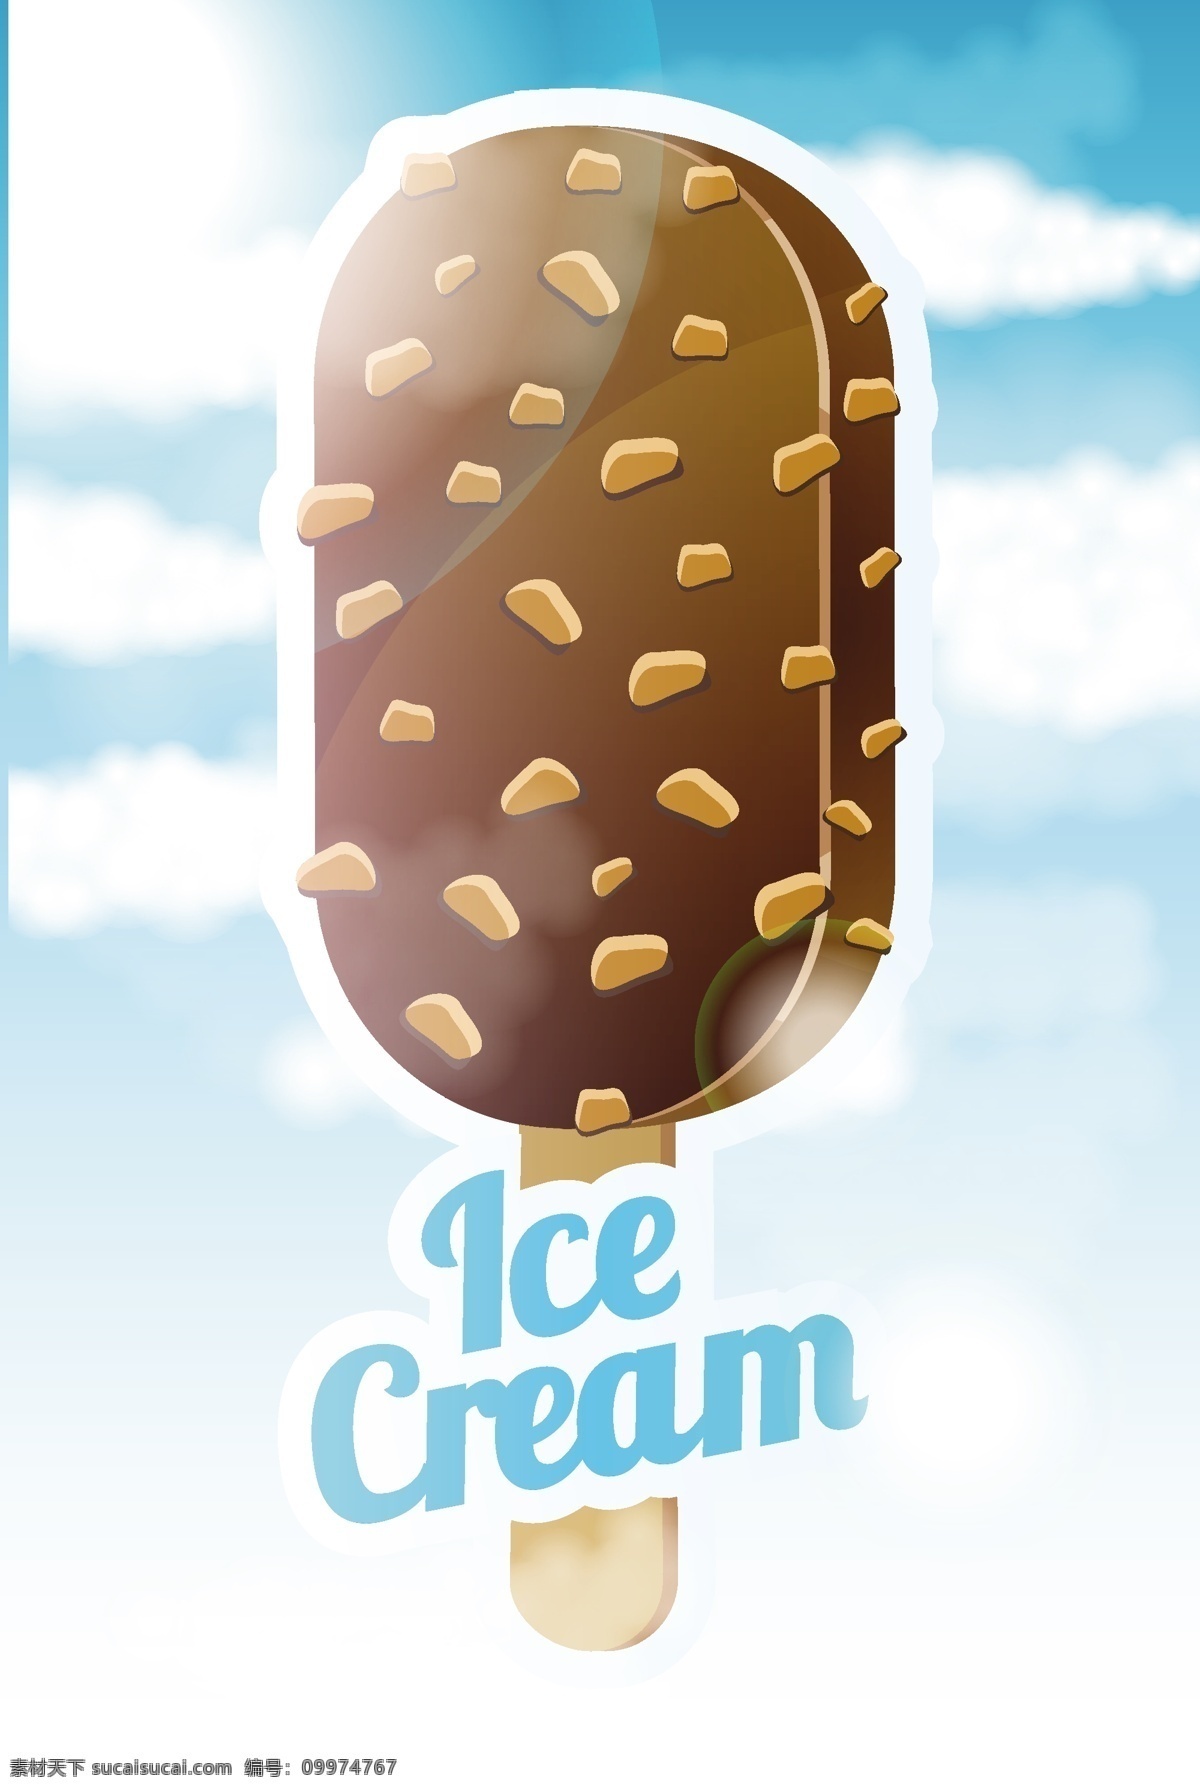 卡通 雪糕 冰淇淋 广告 背景 美食 食物 夏日 宣传海报 矢量图